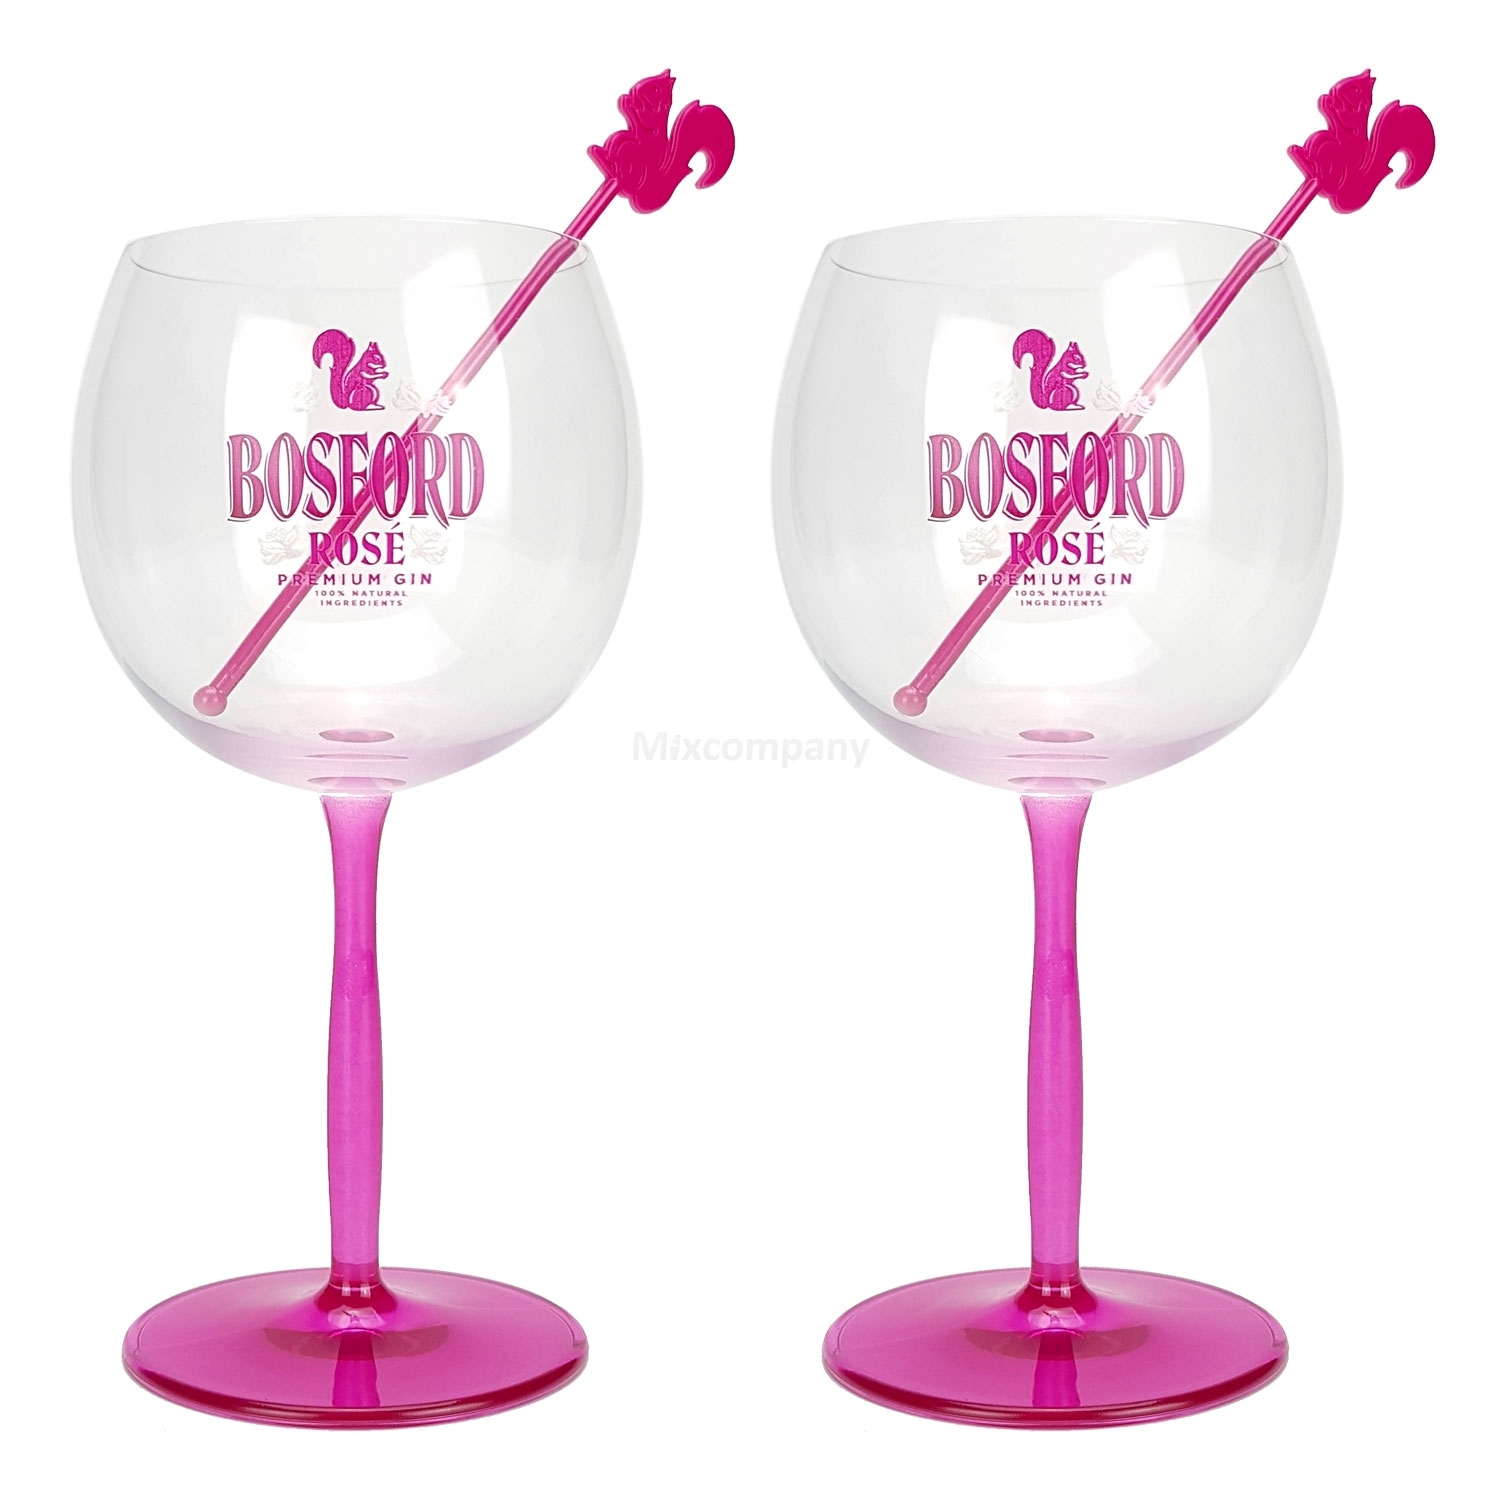 Bosford Rose Premium Gin Ballonglas Cocktailglas mit Stirrer - 2er Set